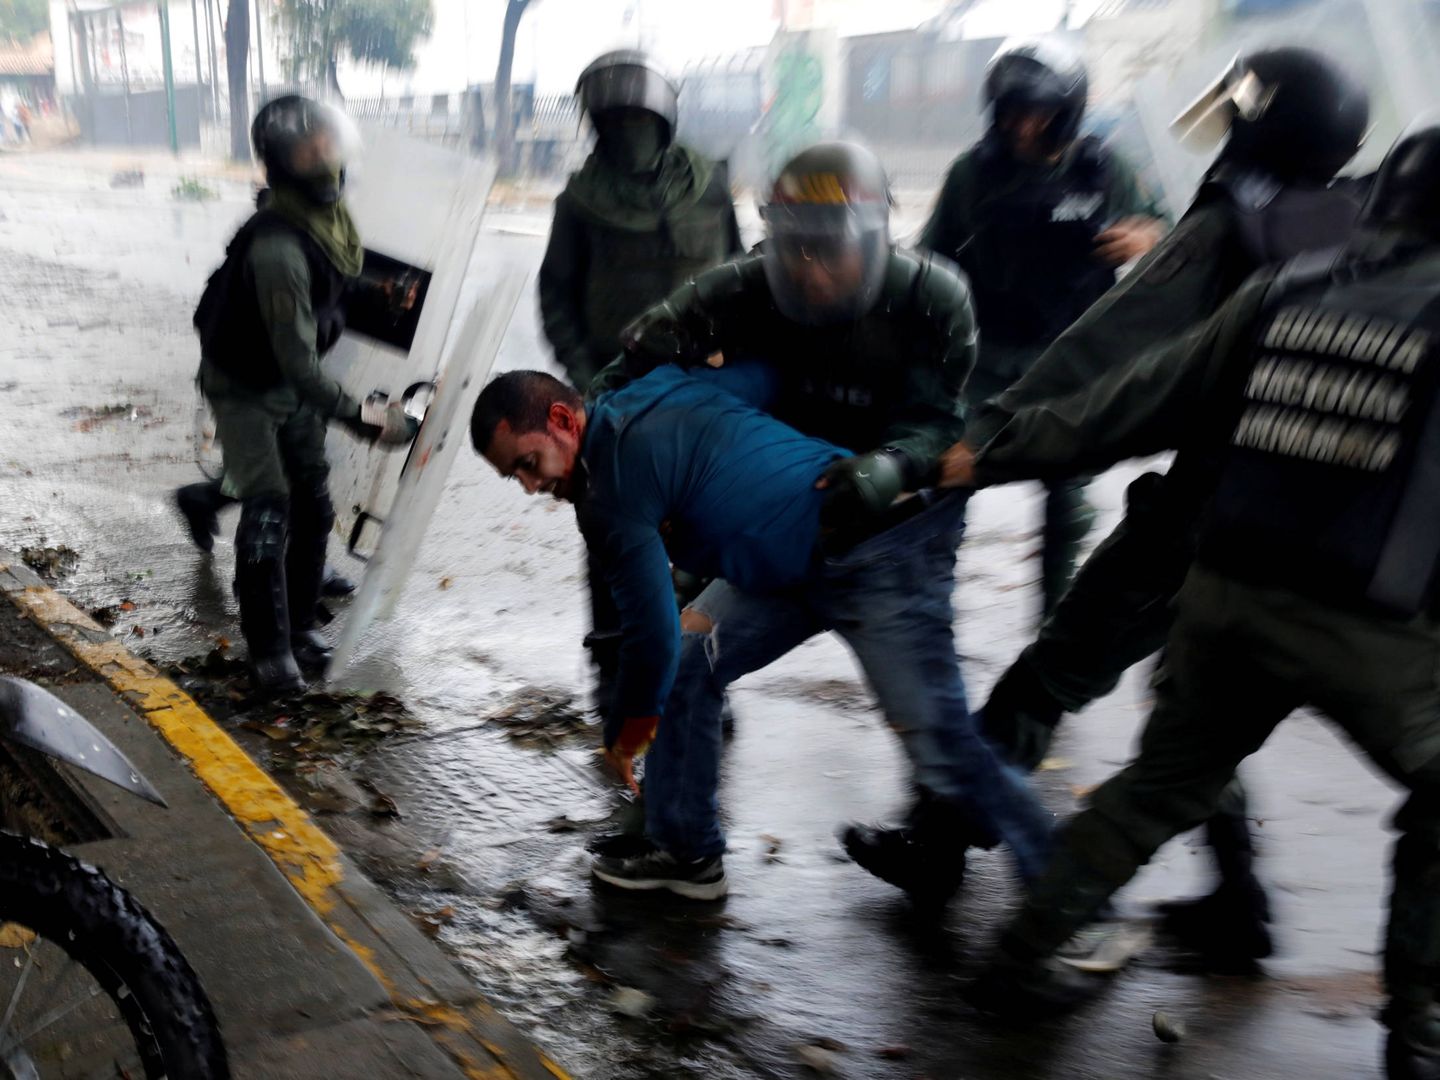 Fuerzas de seguridad detienen a un manifestante durante una protesta contra el Gobierno de Maduro en Caracas. (Reuters)